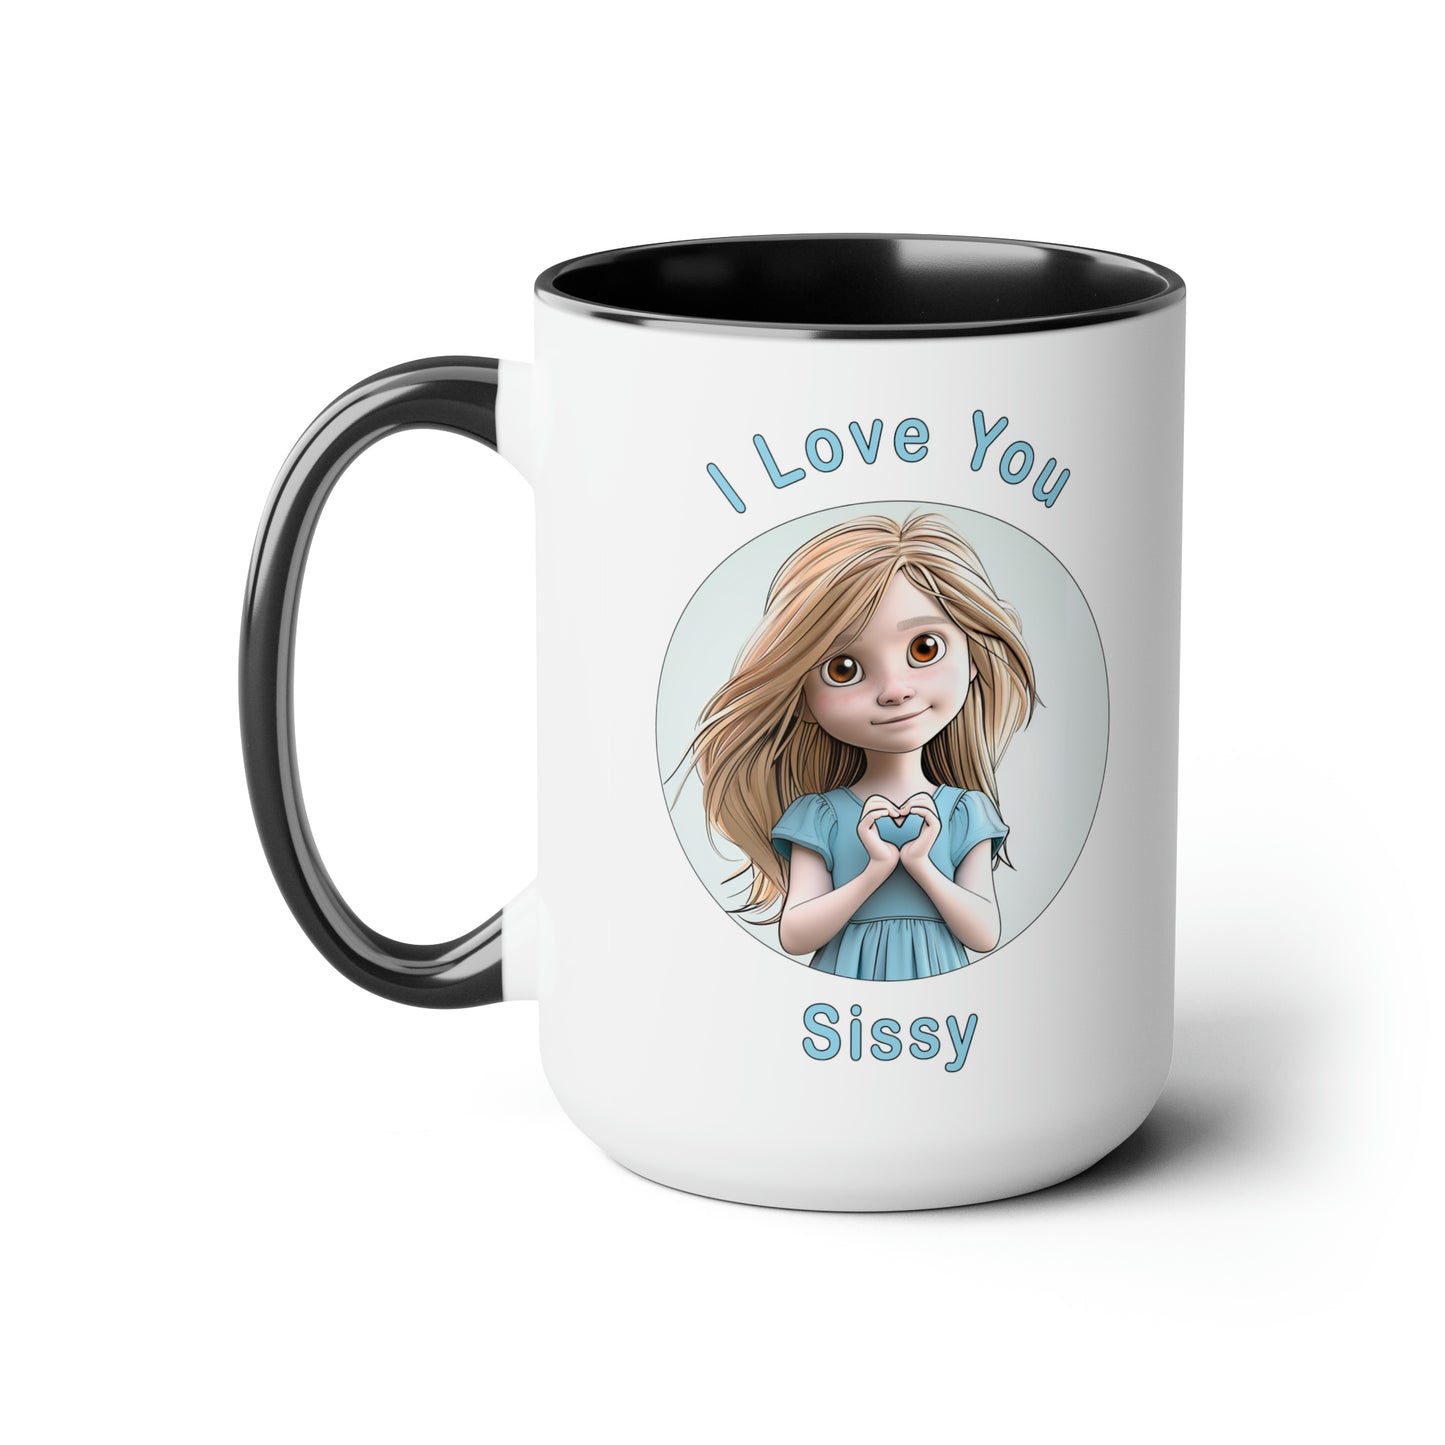 I Love You Sissy, Two-Tone Coffee Mugs, 15oz